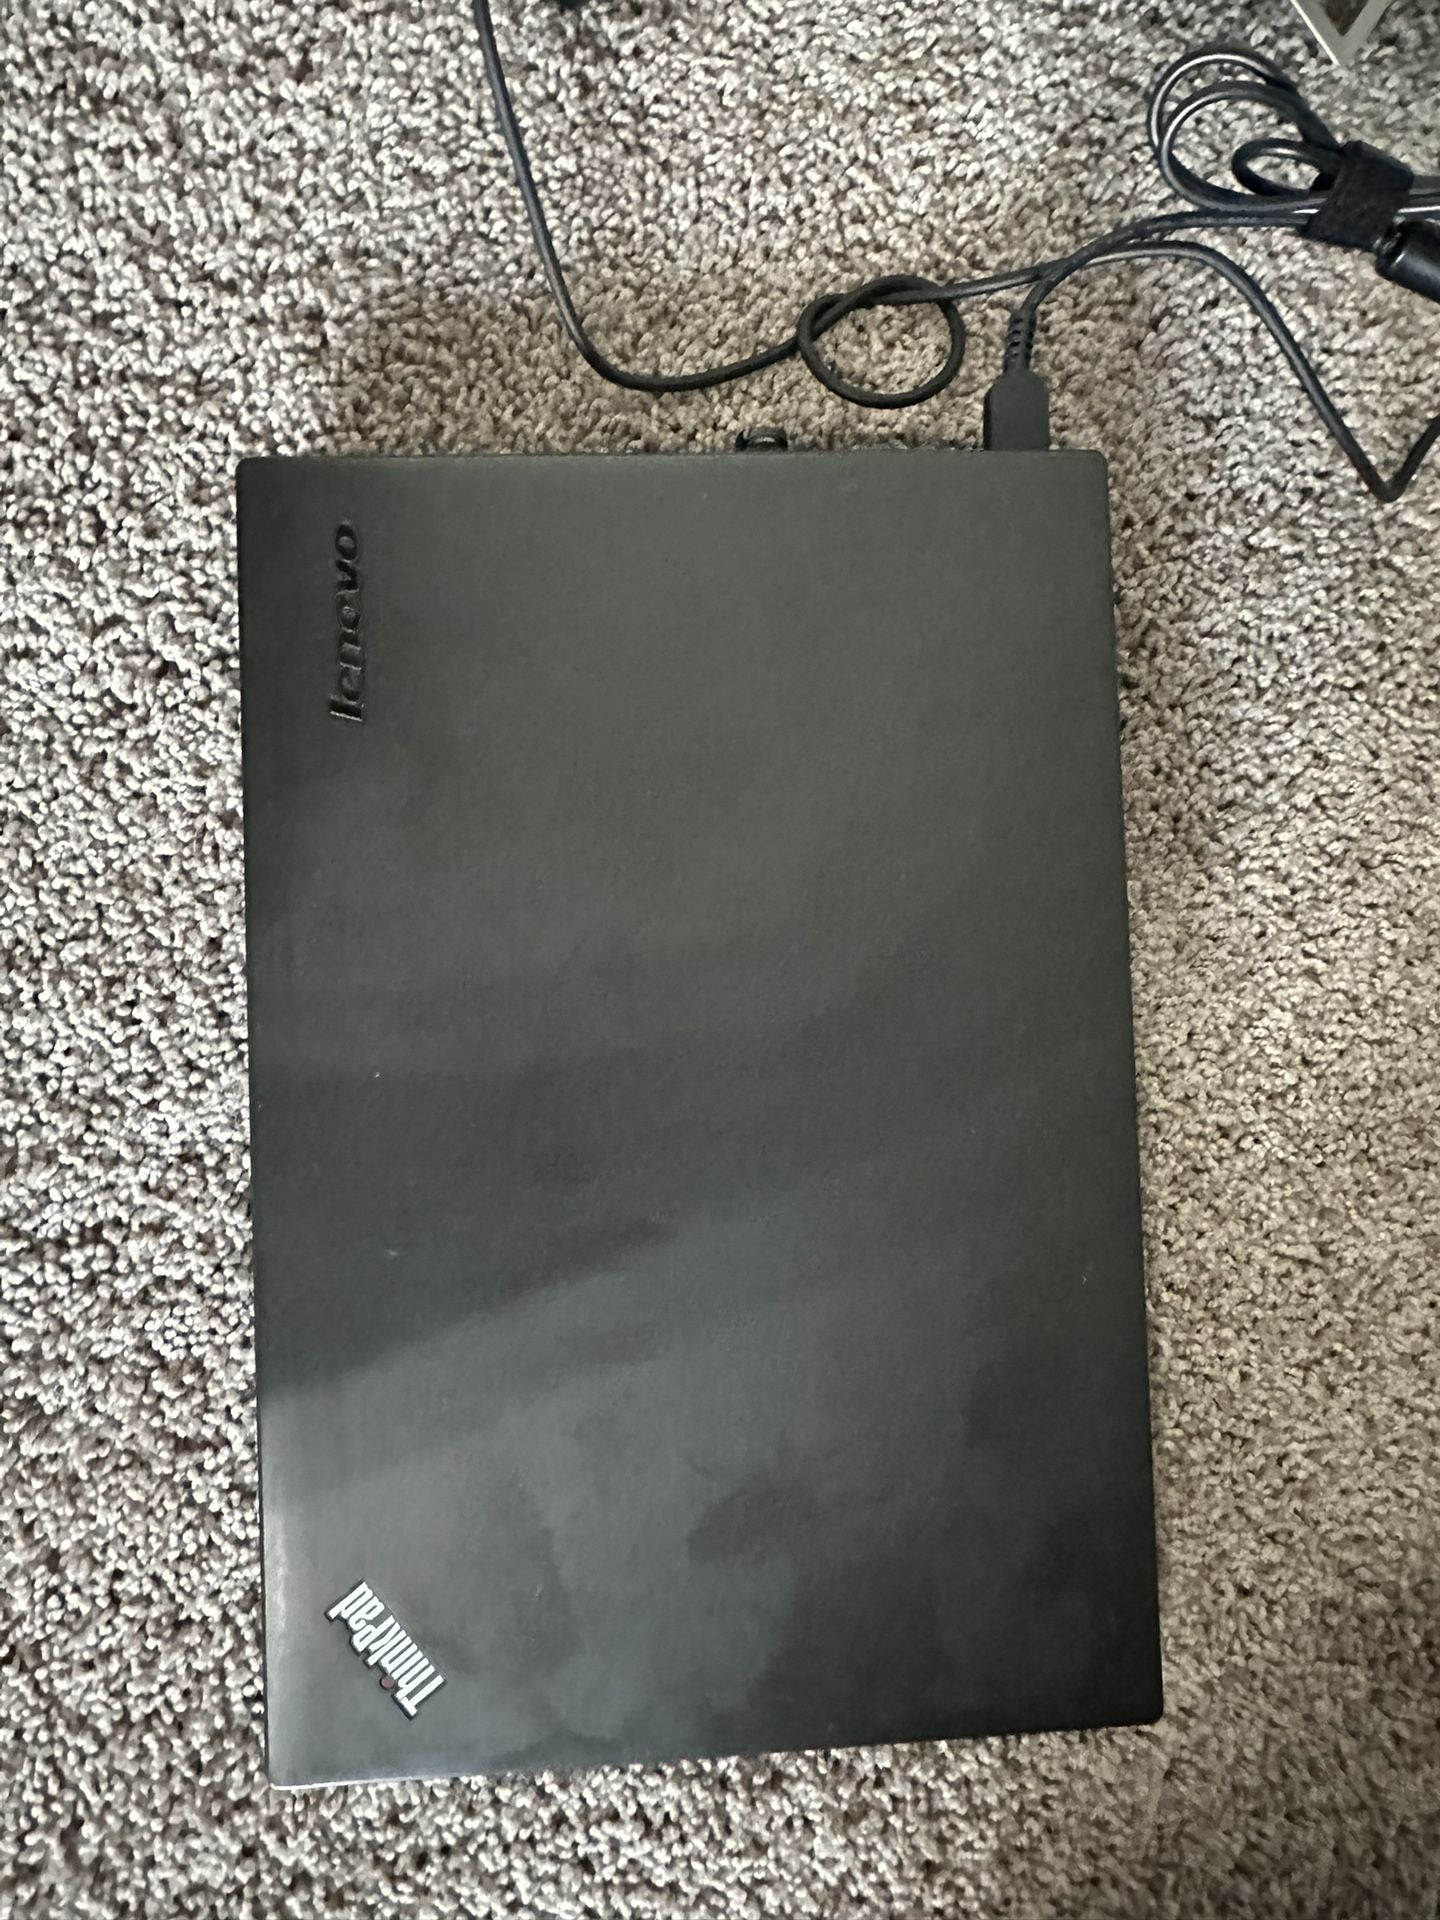  Lenovo X1 Carbon Ultrabook 